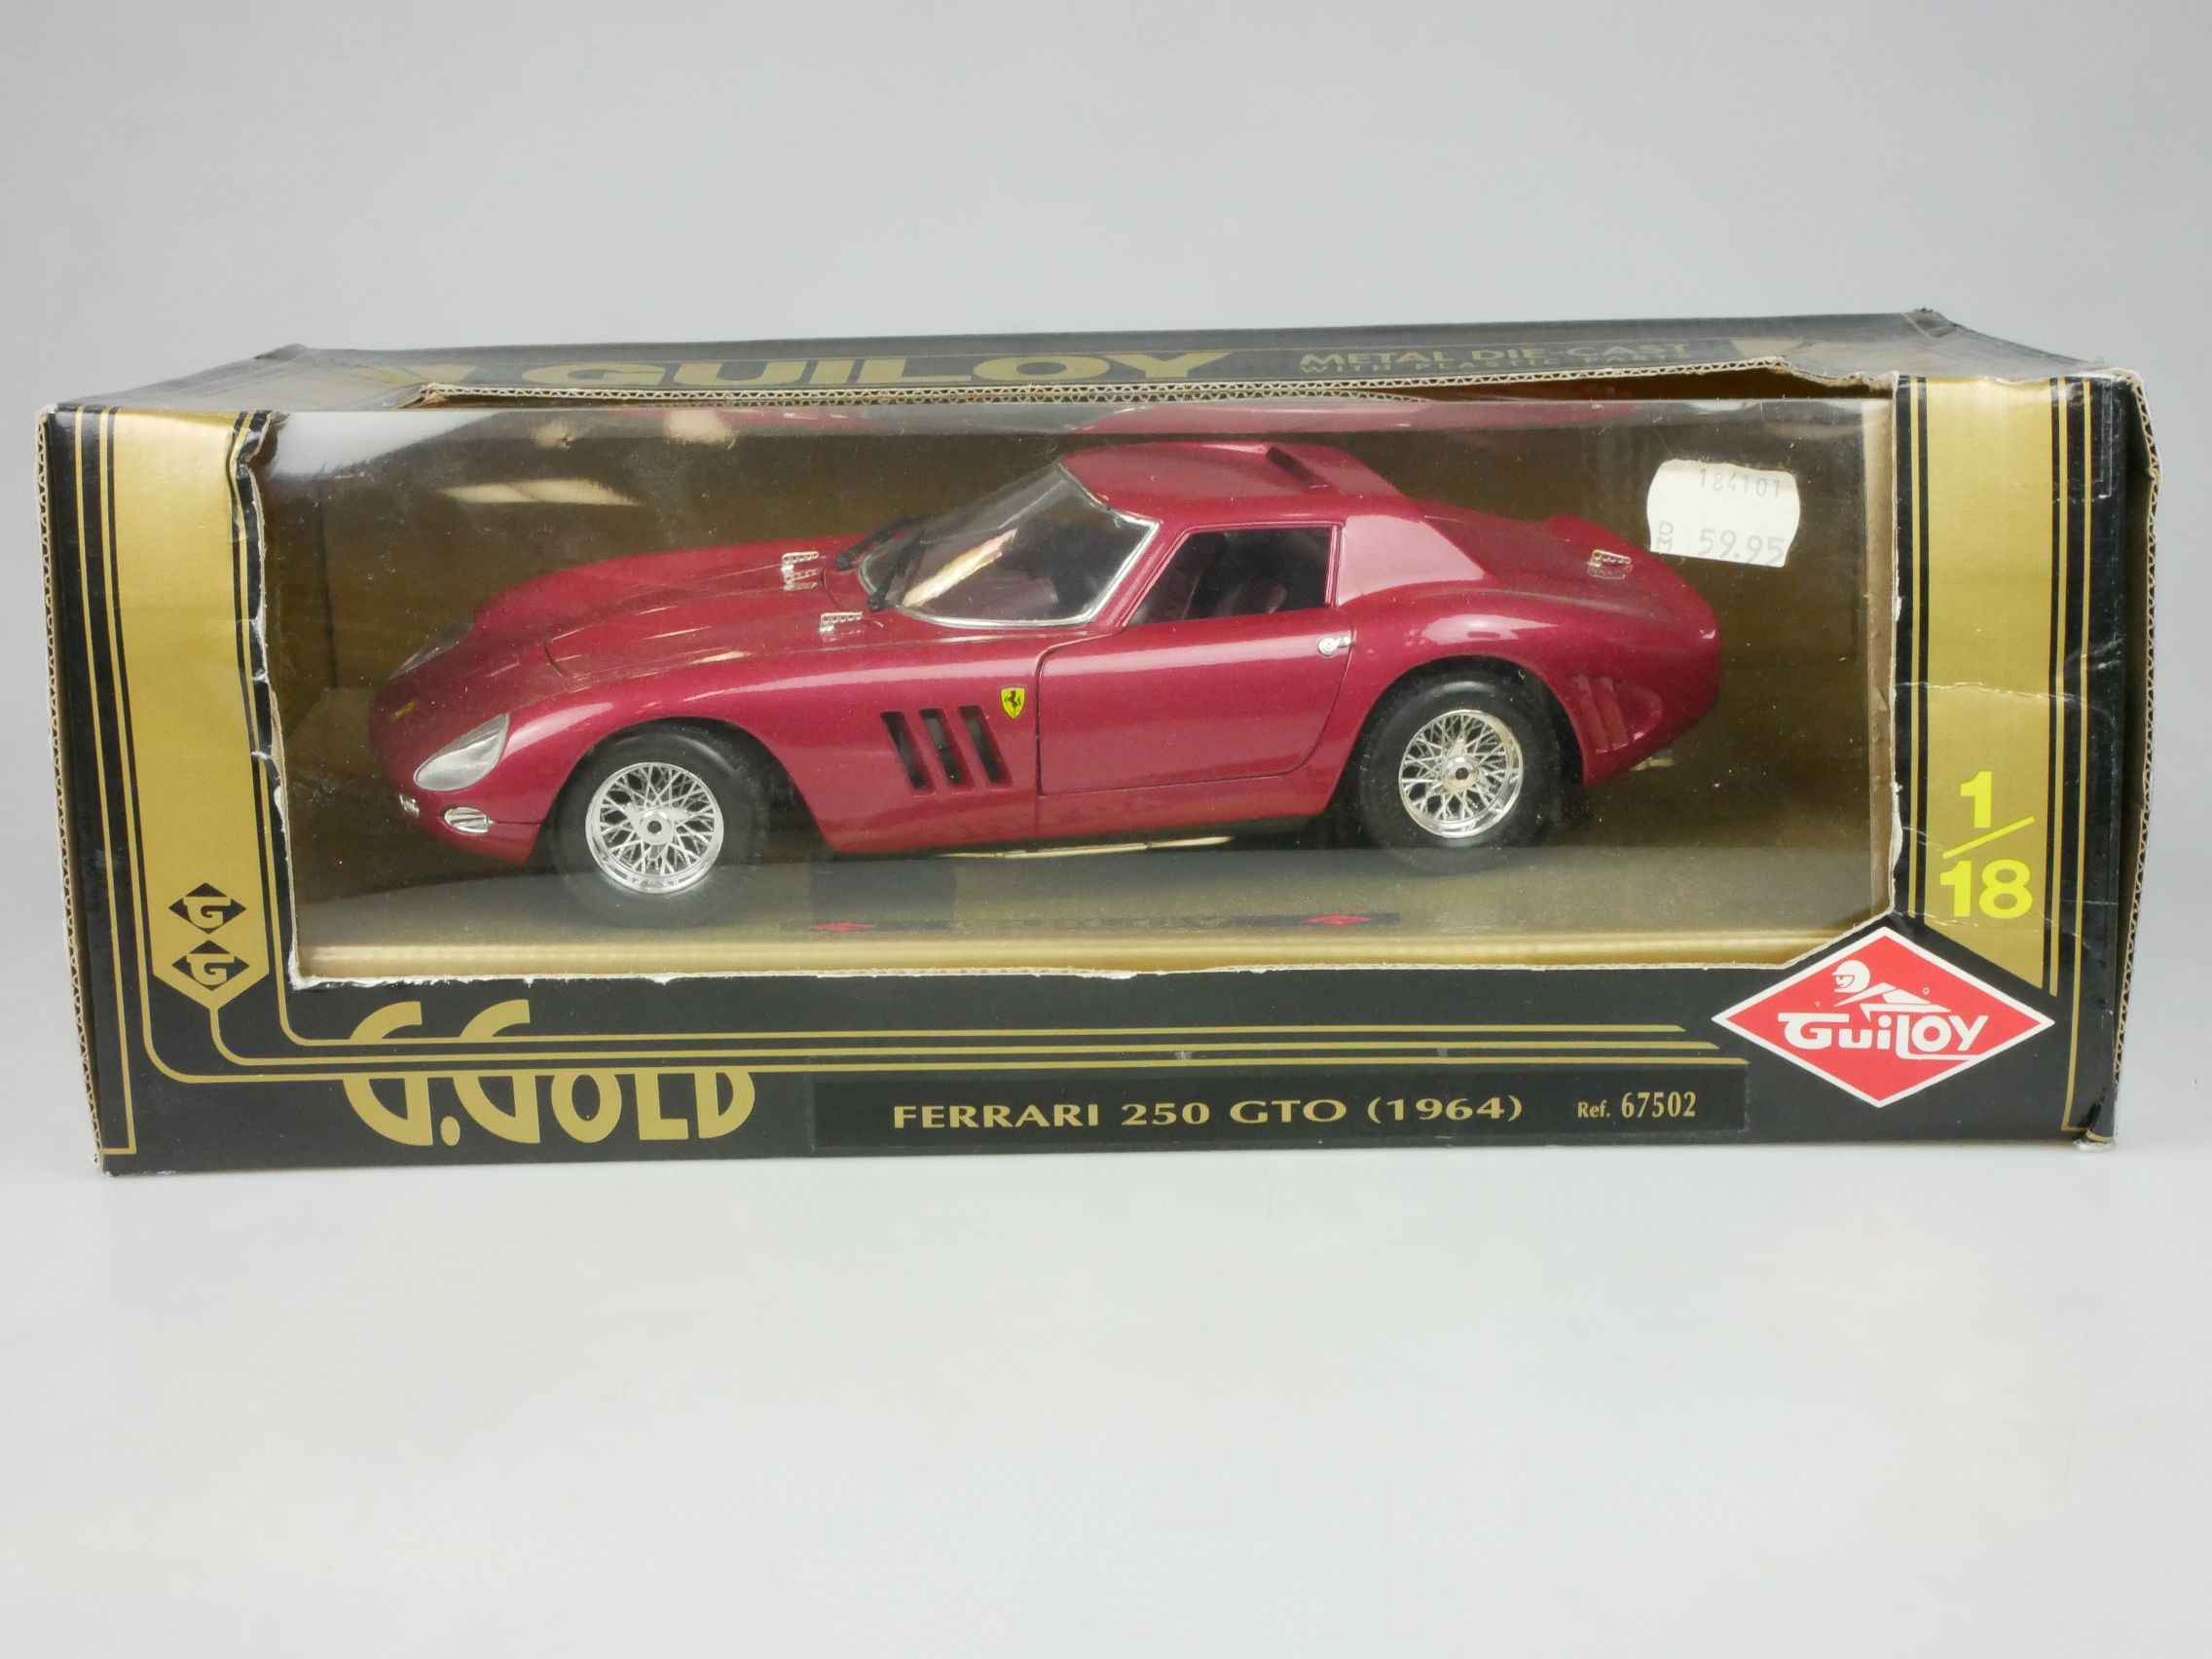 Guiloy 1/18 Ferrari 250 GTO 1964 diecast 67502 + Box 126644